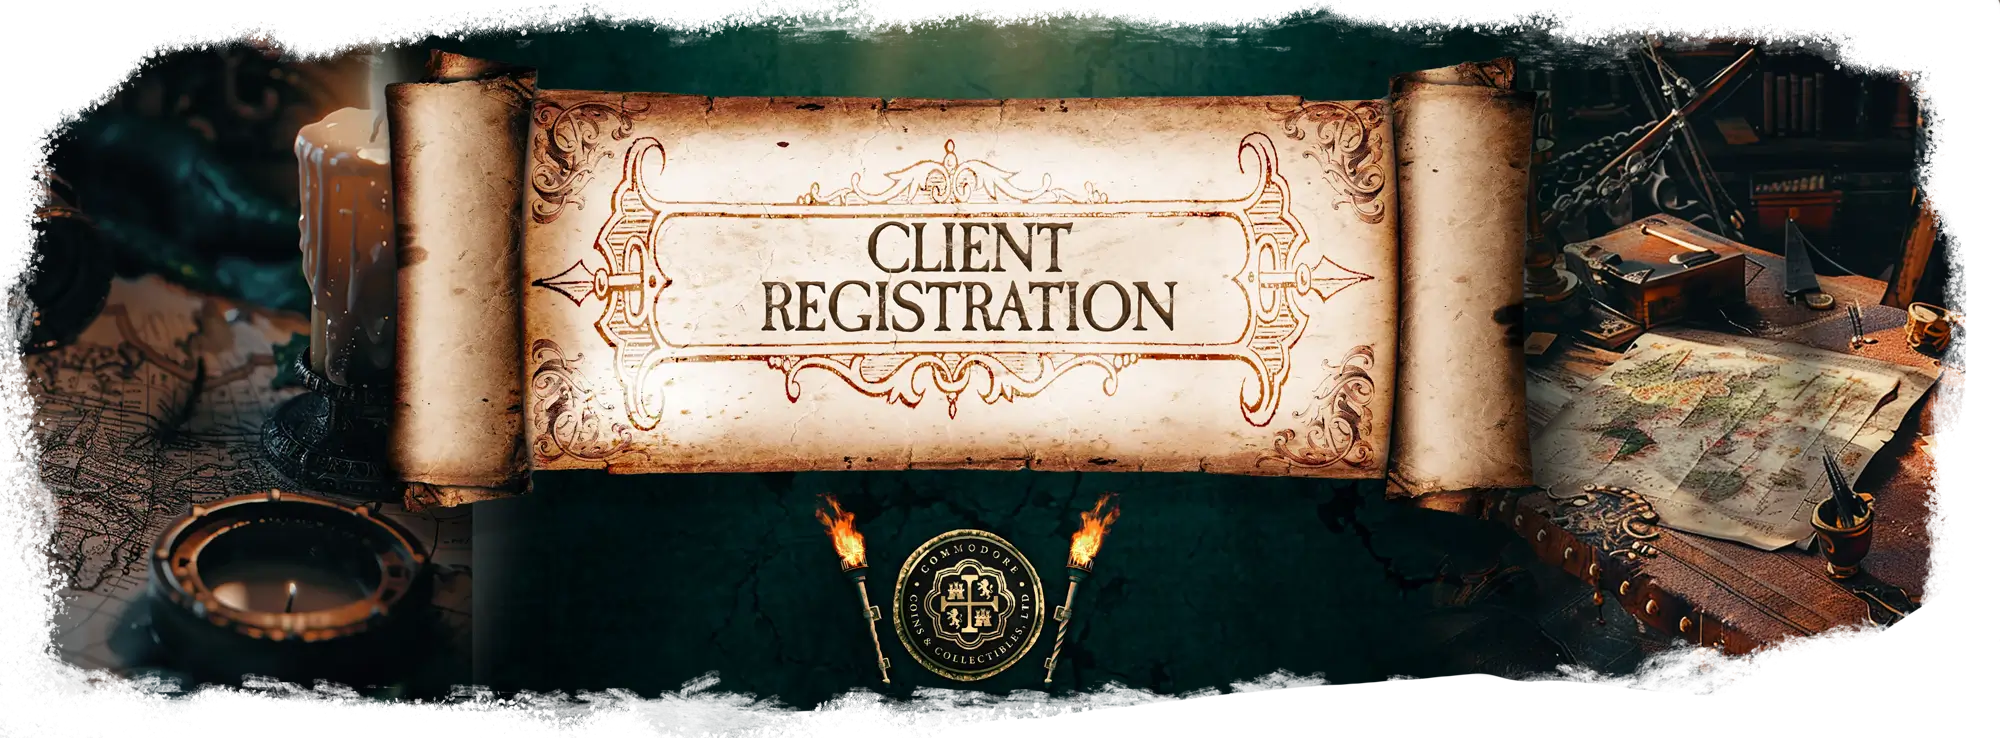 Client Registration